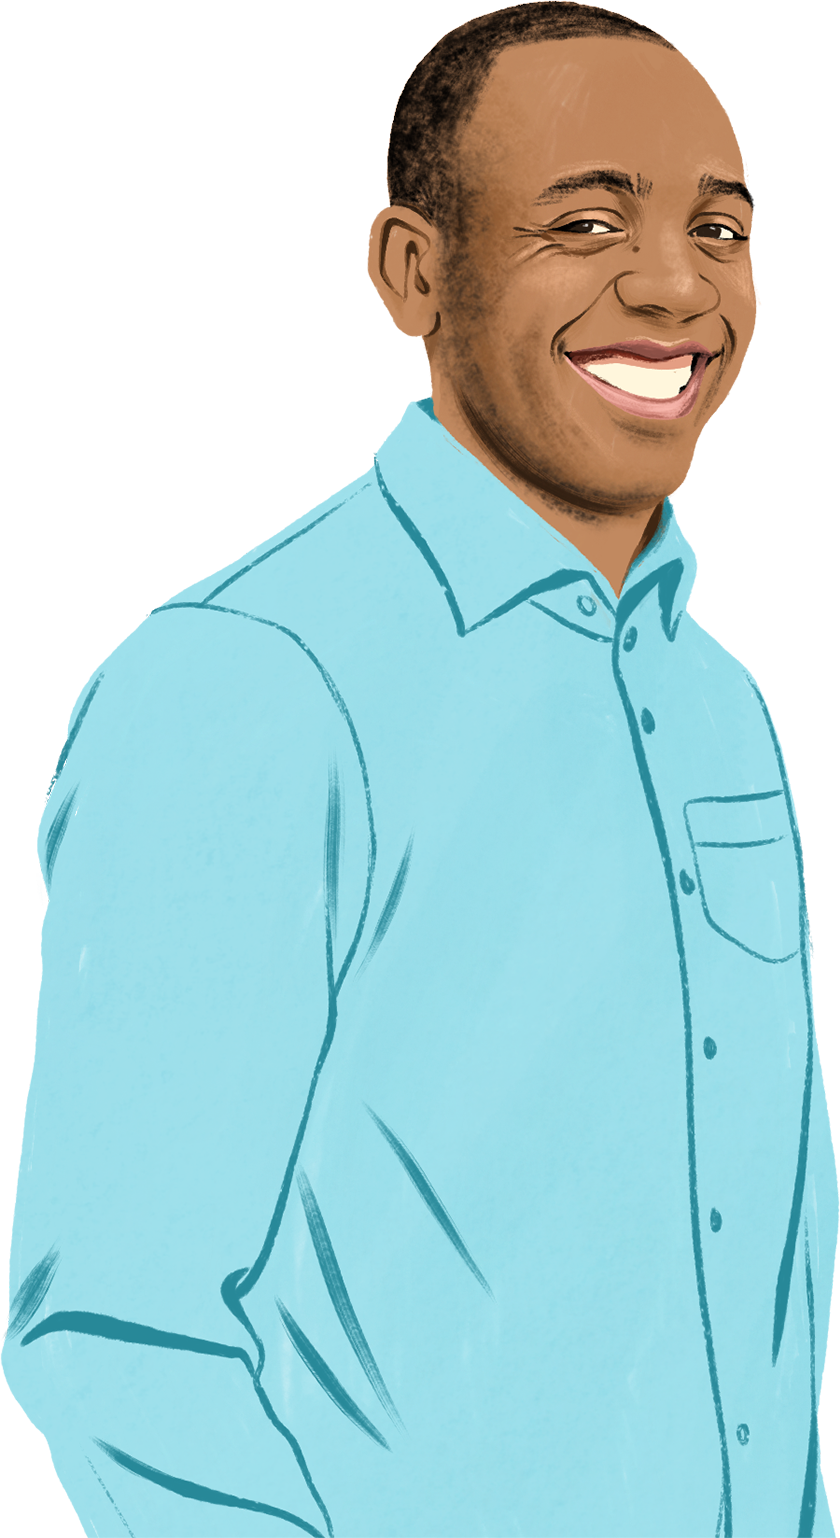 Ilustrovaný portrét Briana, který se s úsměvem dívá na čtenáře. Obklopují ho ikony iPadu a iPhonu a ilustrovaný visací zámek.